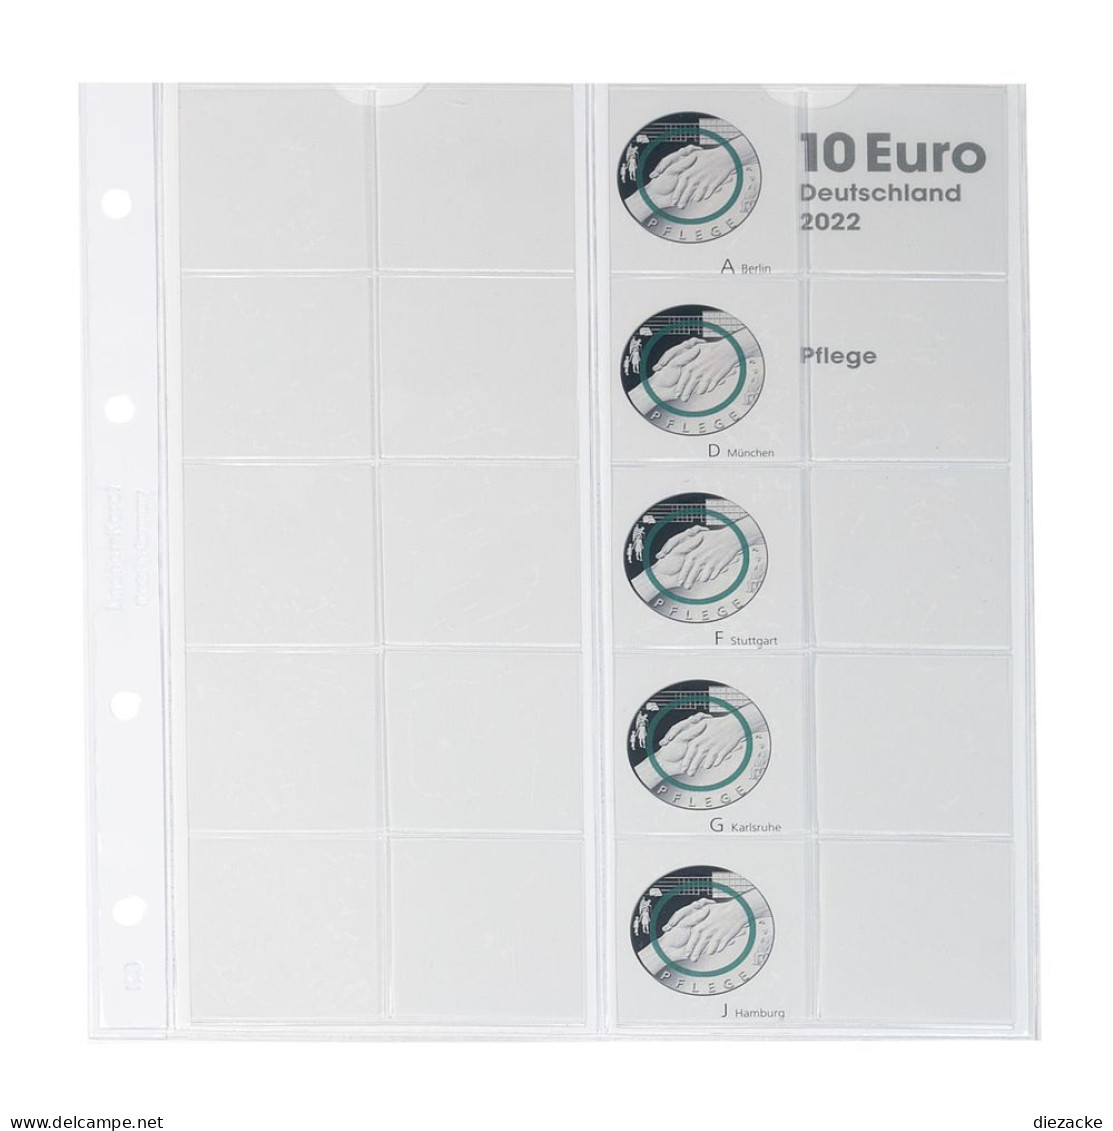 Lindner Vordruckblatt Karat Für 10 Euro-Münzen Polymerring 1110-4 Neu - Zubehör